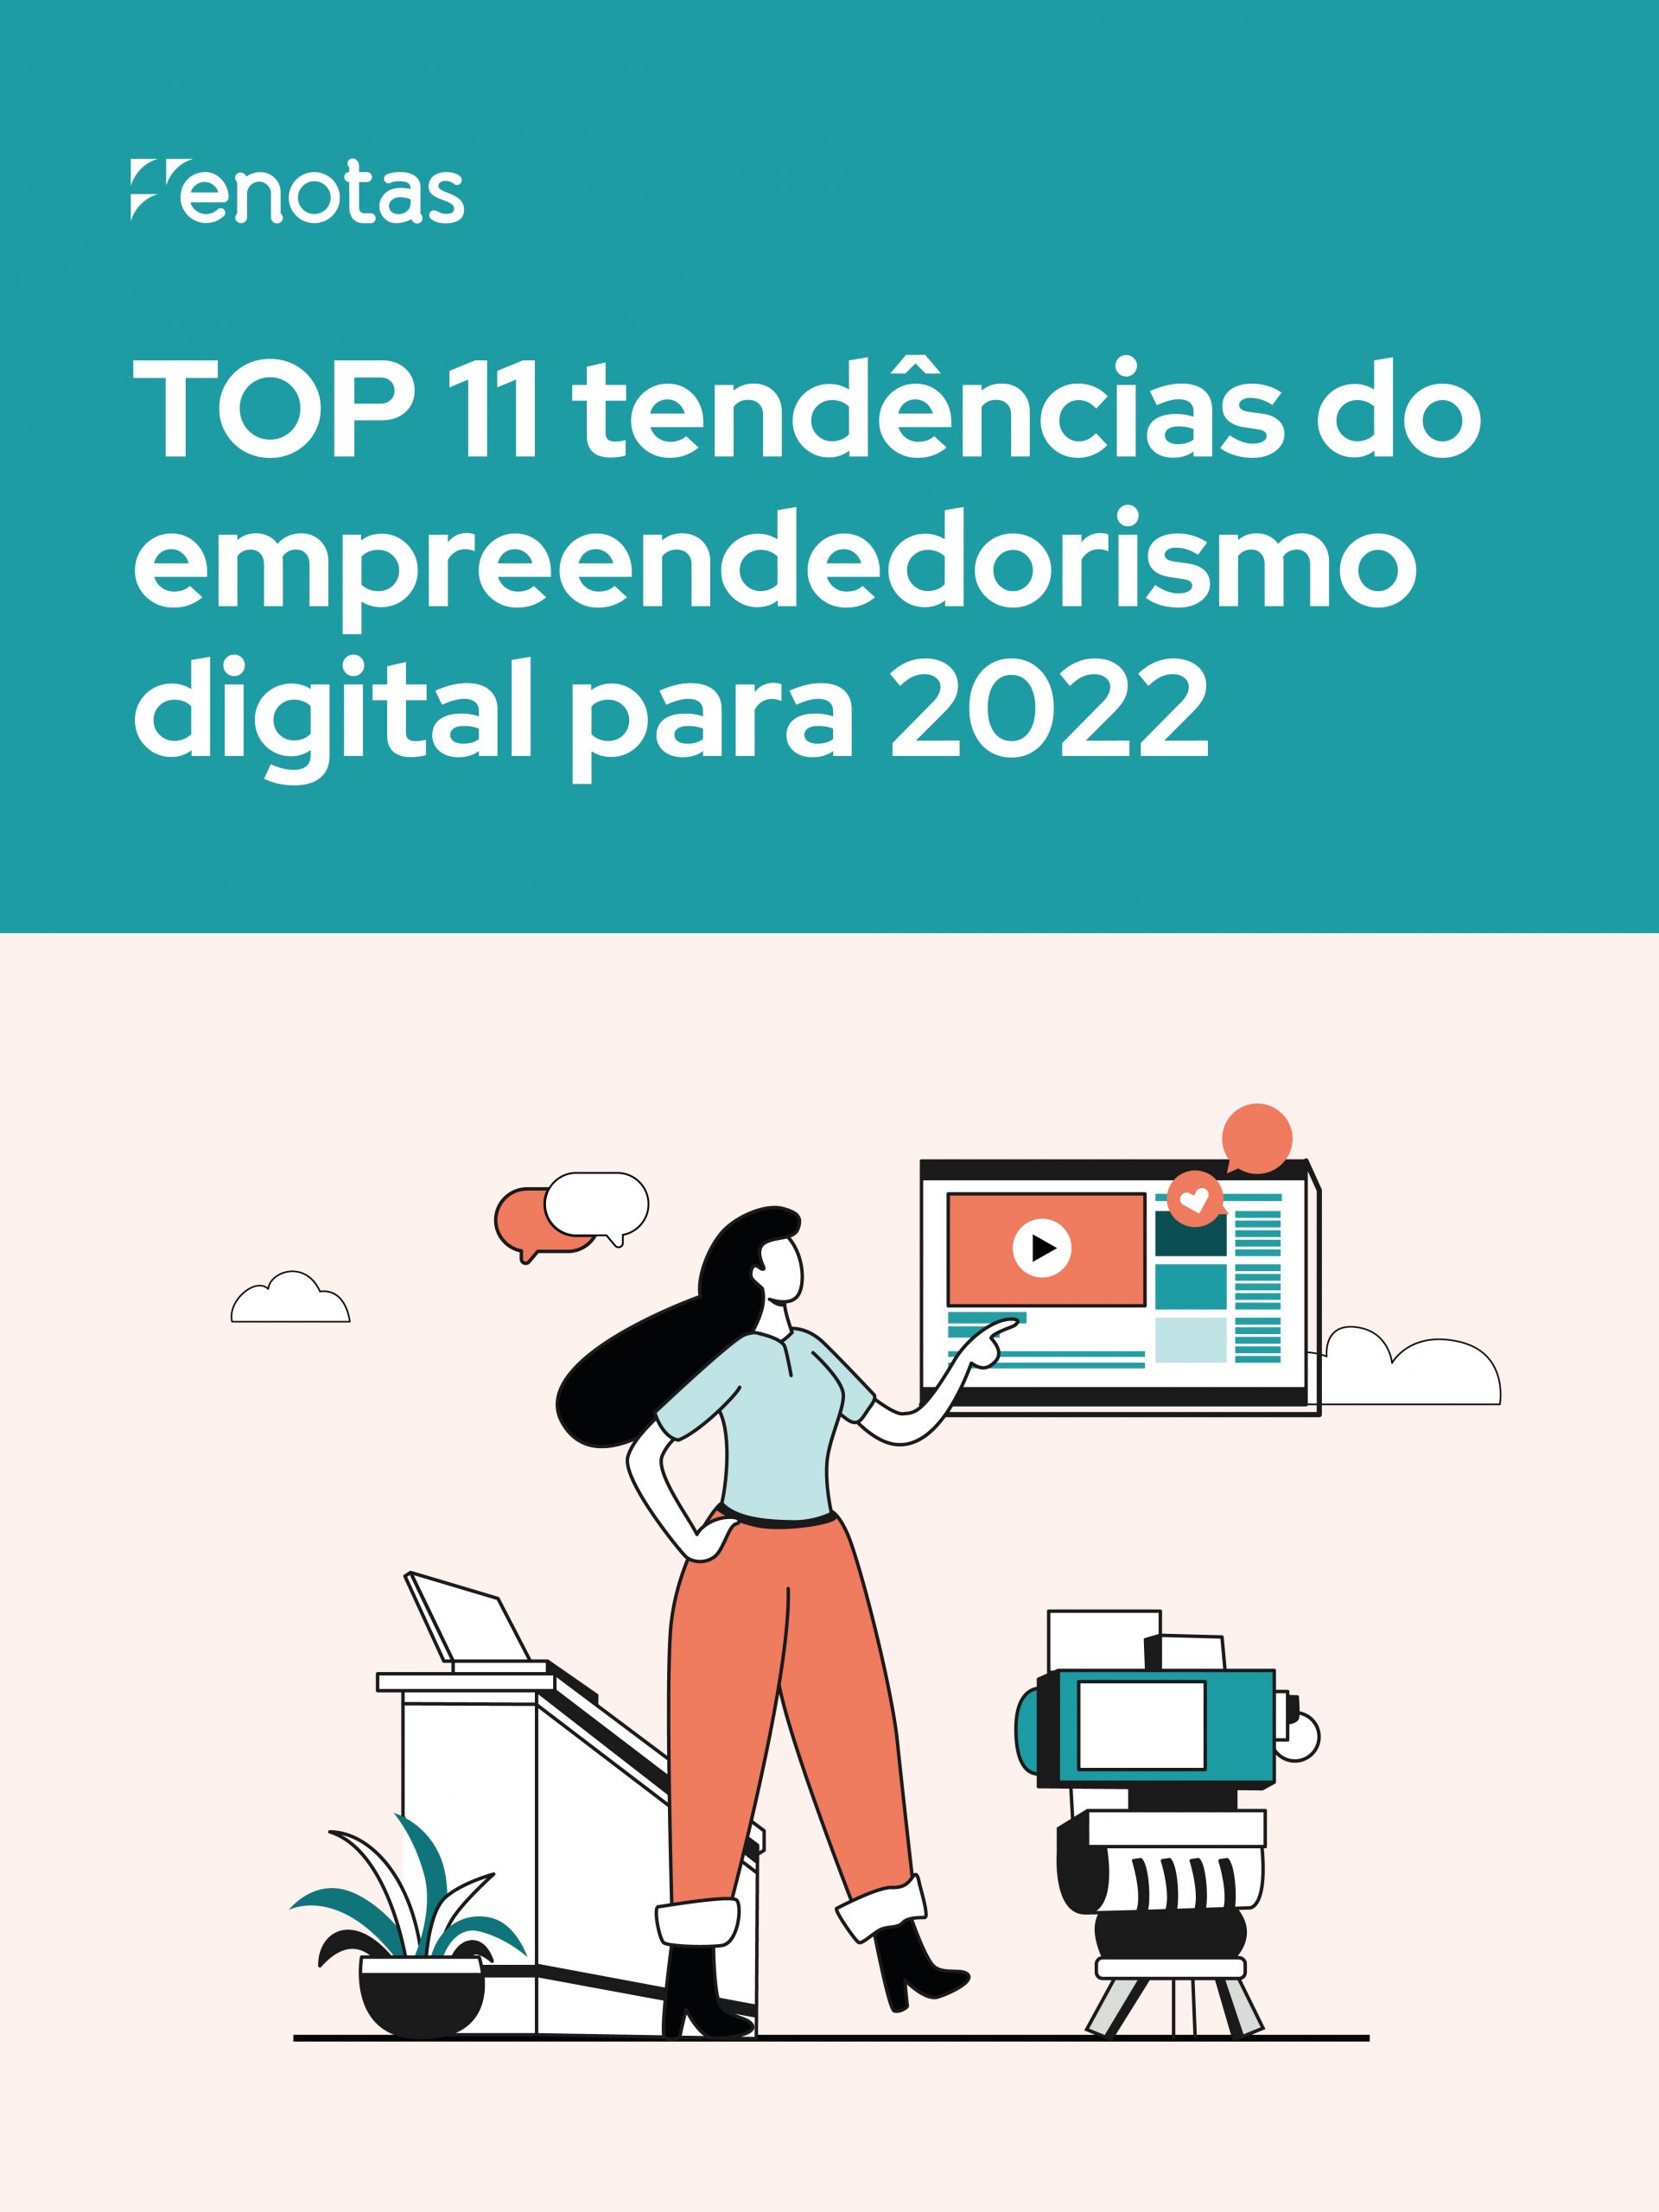 eNotas_Capa_eBook_2022_TOP_11_tendencias_do_empreendedorismo_digital_para_2022